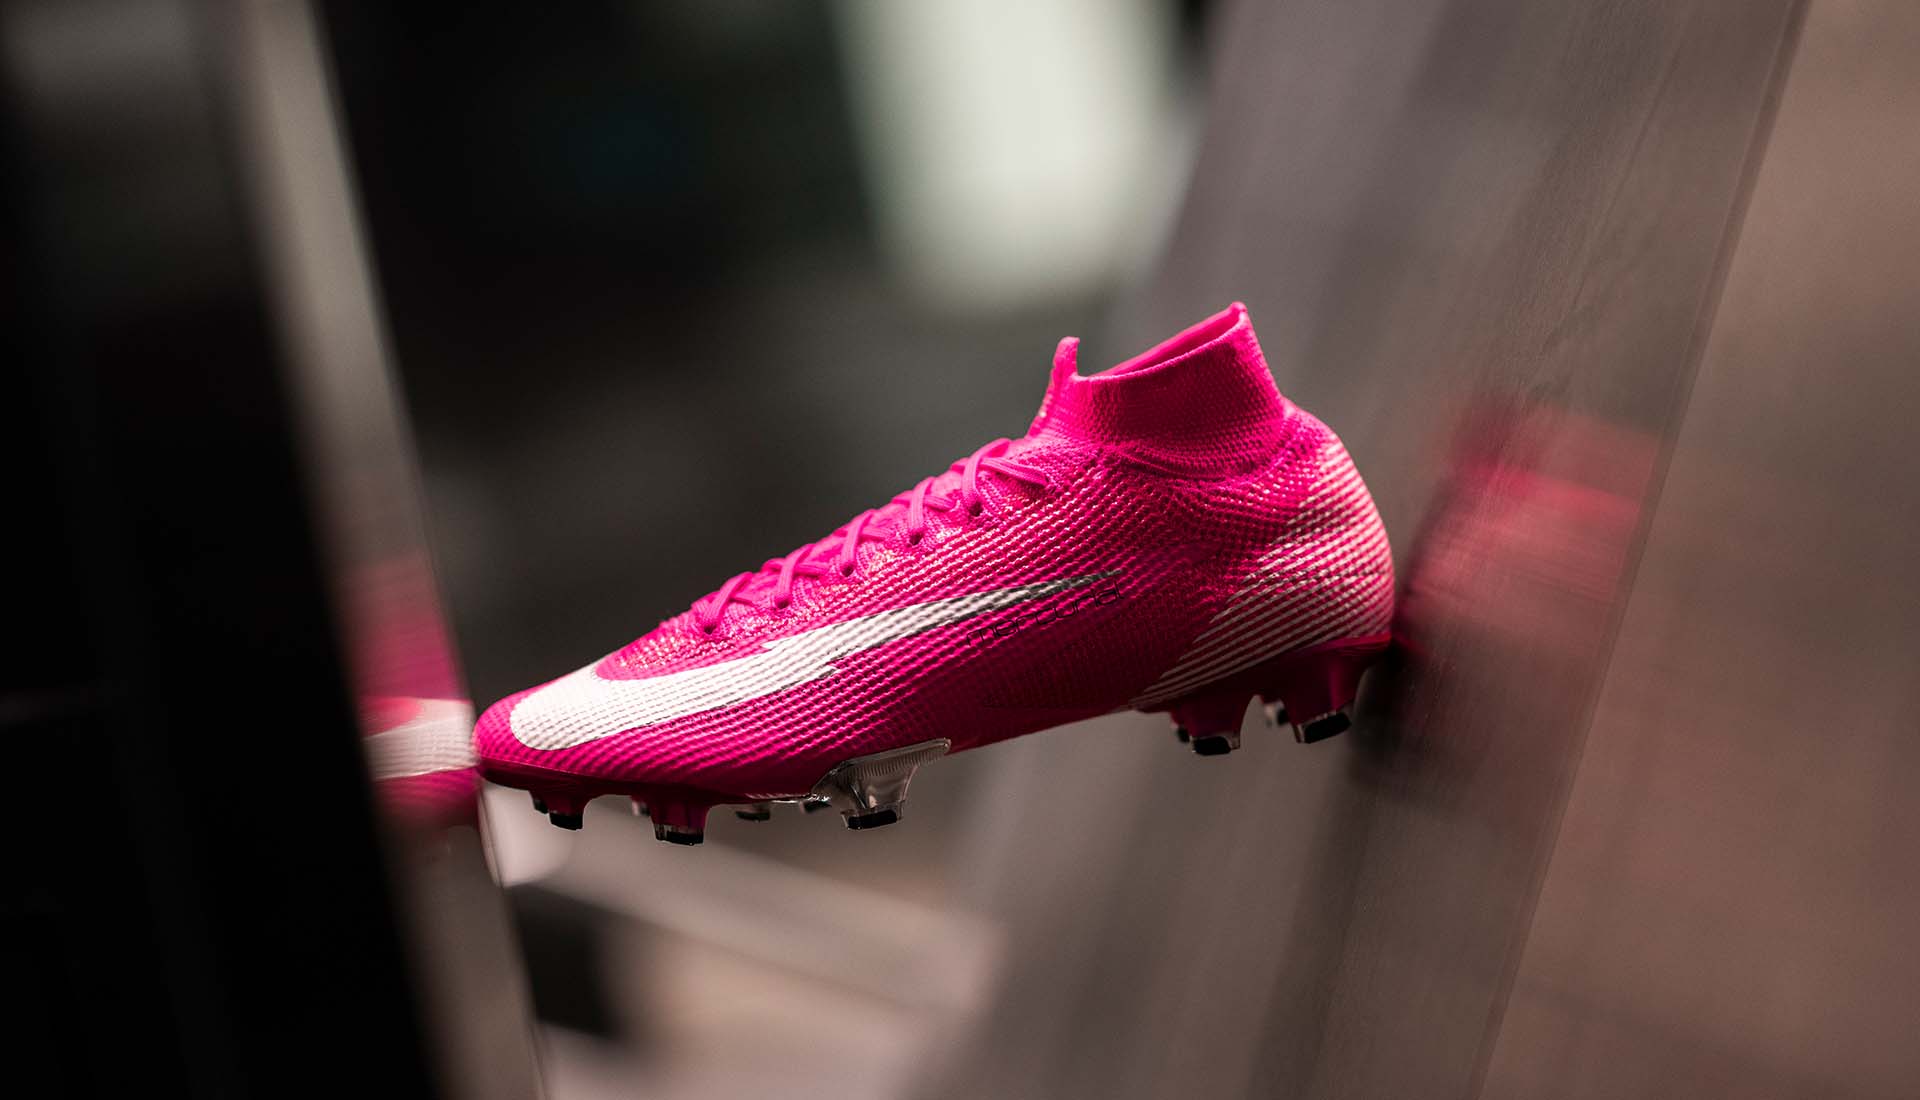 Đôi giày bóng đá Nike màu hồng được Mbappé mong ước được sở hữu từ thời còn nhỏ